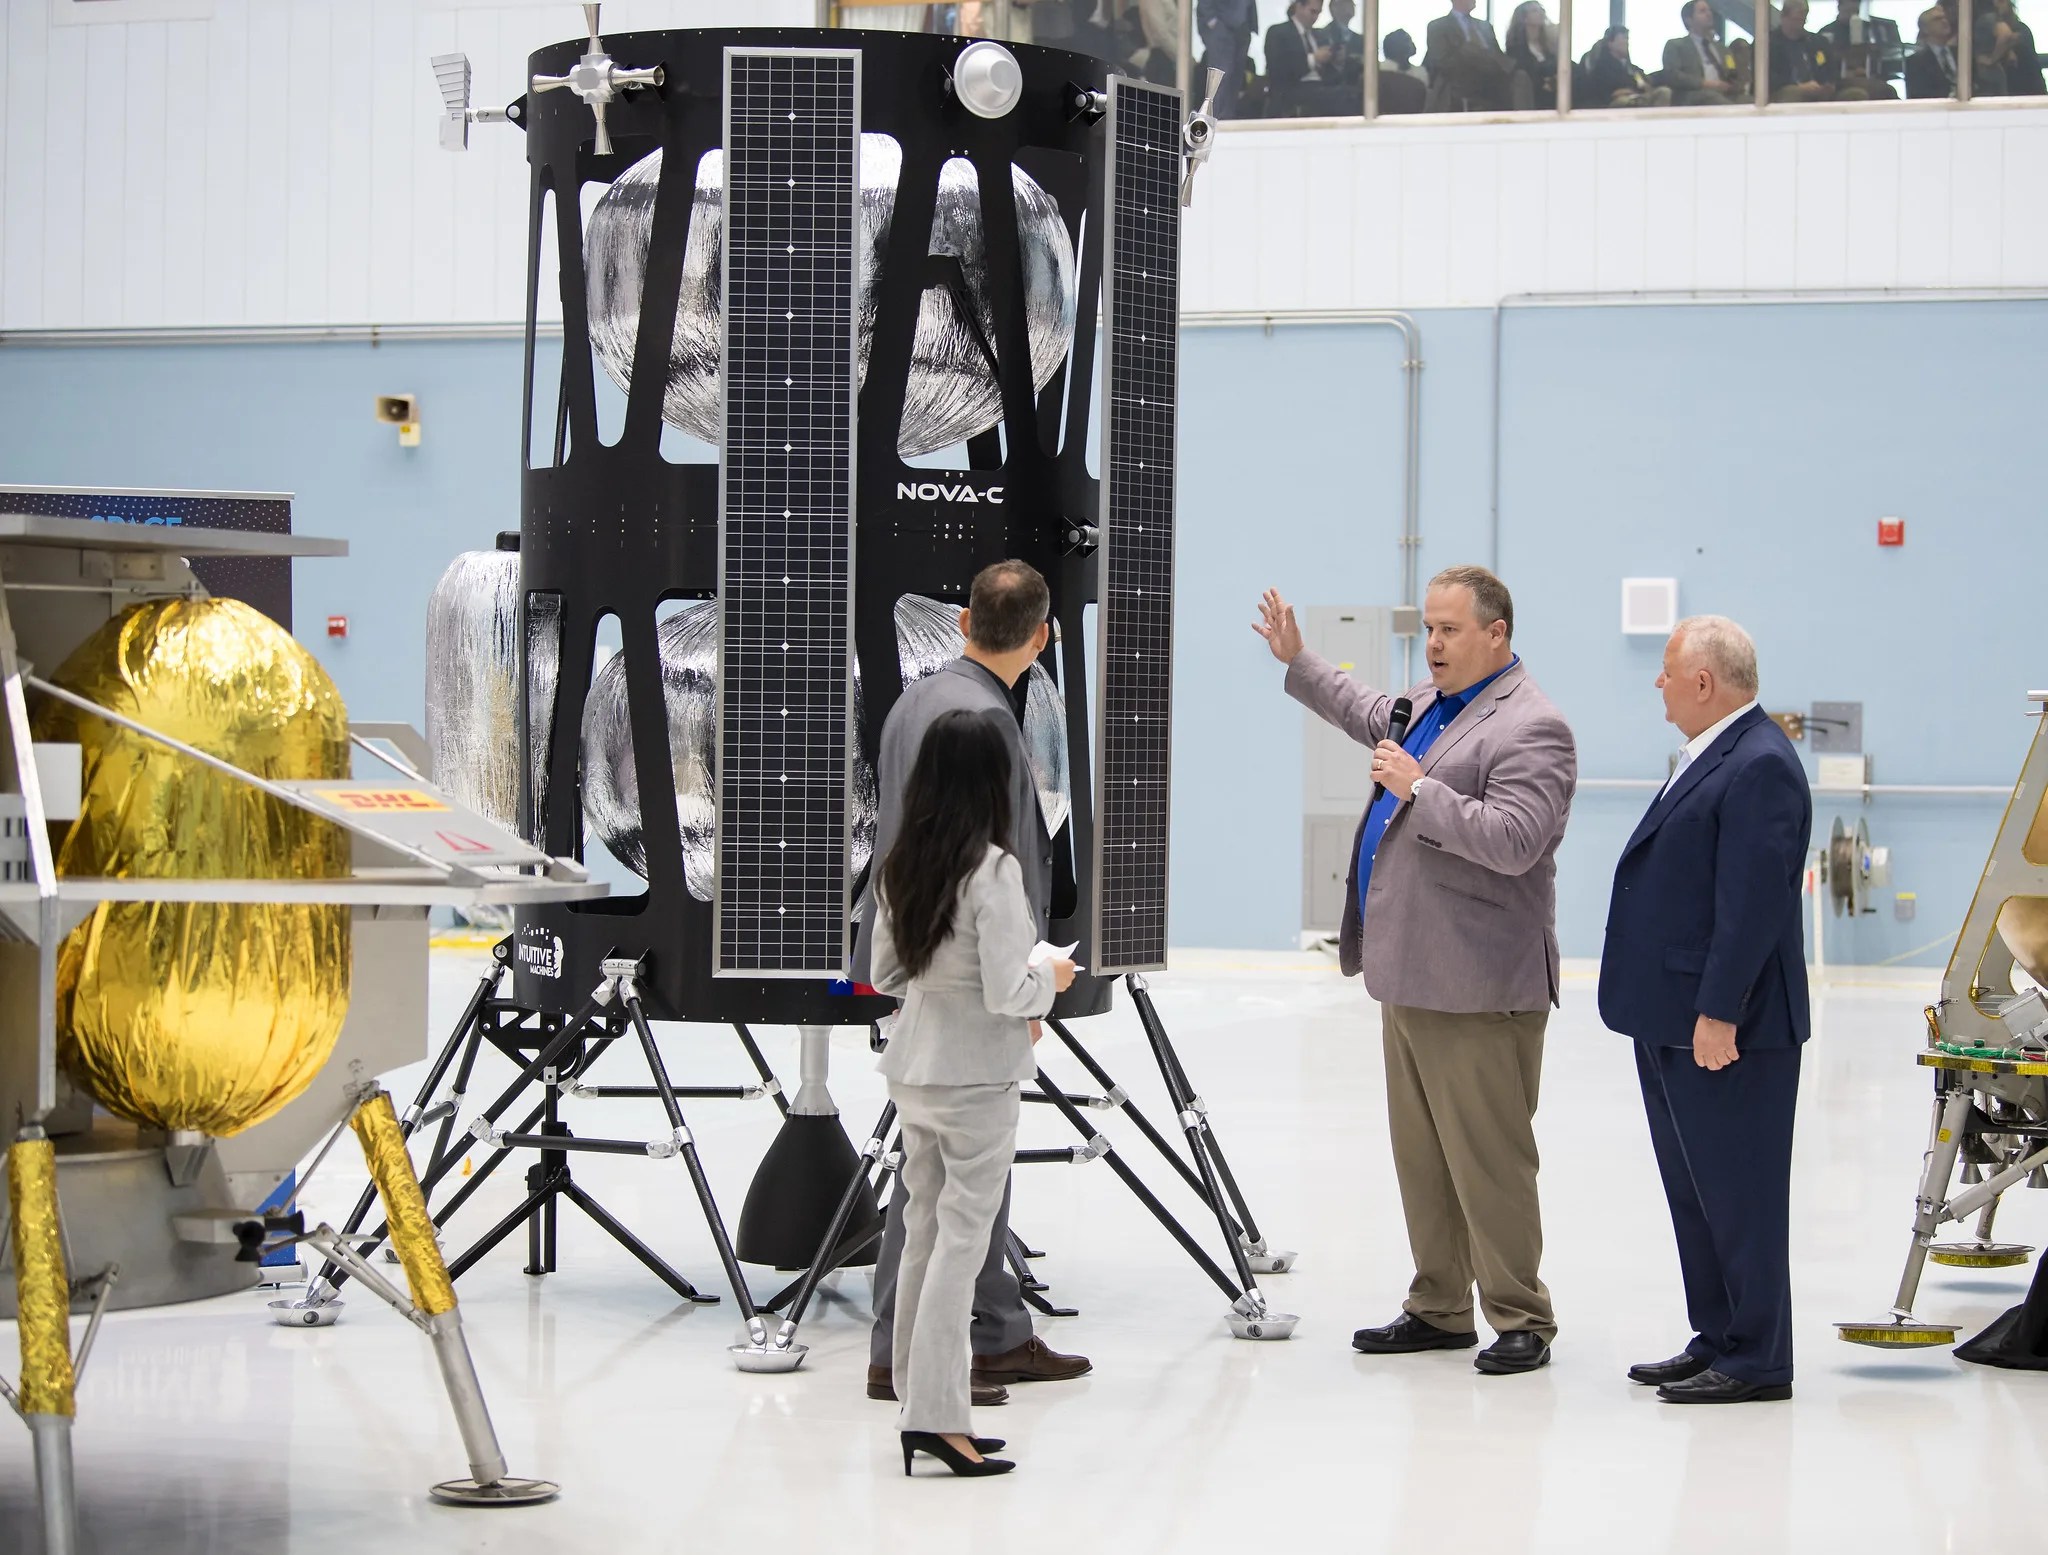 四个人聚集在直觉机器月球着陆器研发中心前。右边第二个男人，TimeCrain，一边说着话，一边把手举向着陆器周围的其他人。左二的托马斯·祖布钦（Thomas Zurbuchen）看着两倍于他的登月舱，而克雷恩（Crain）正在与大家交谈。着陆器有一个黑色外壳，里面有银色结构。